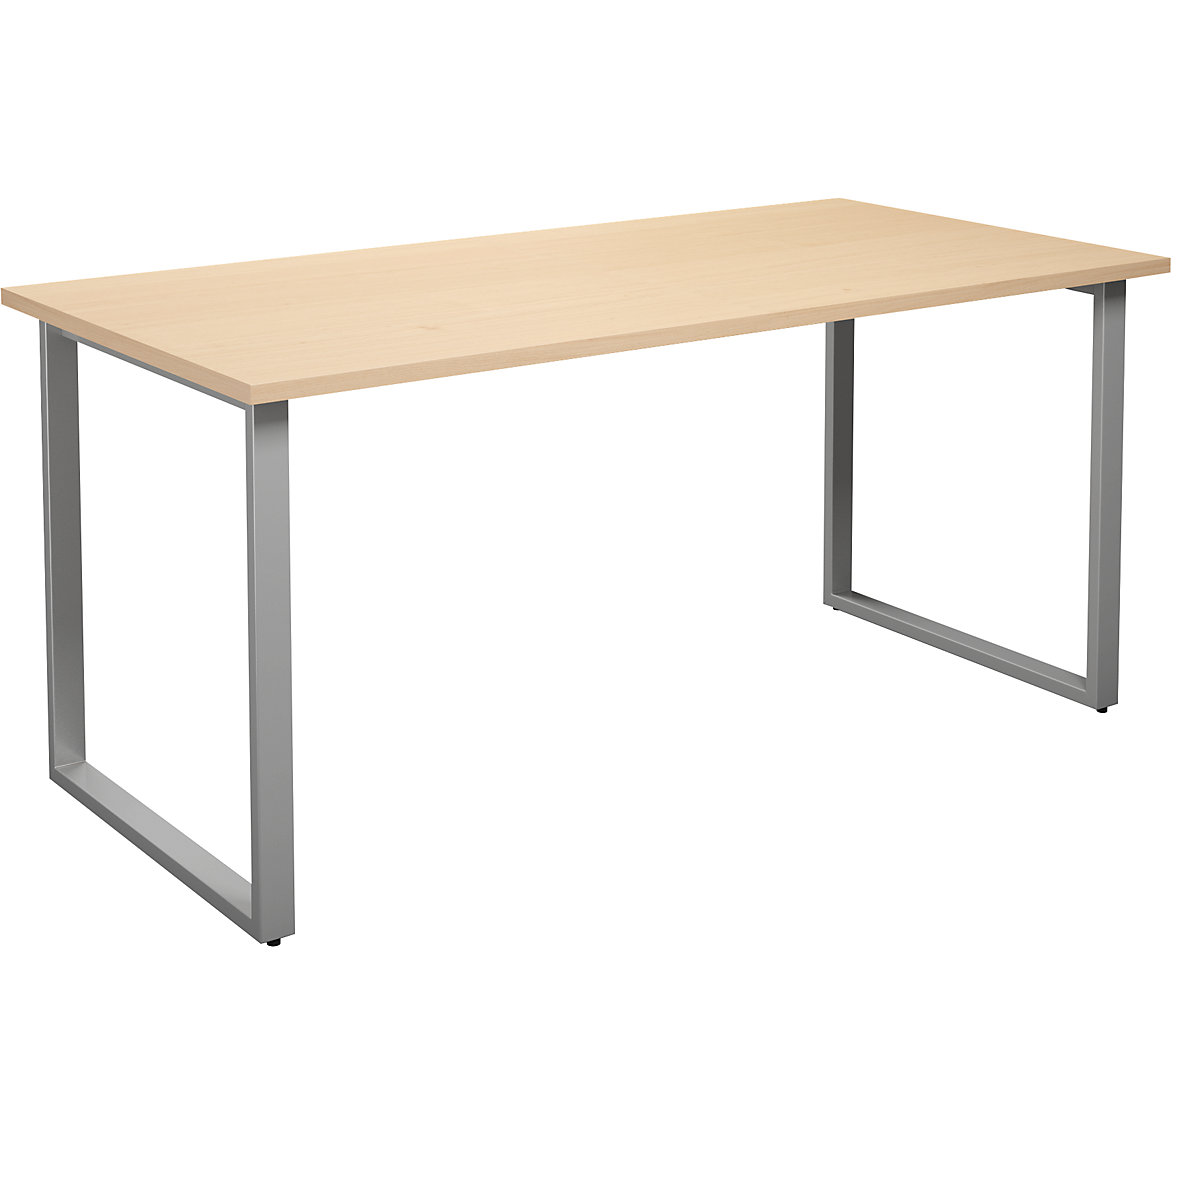 DUO-O multi-purpose desk, straight tabletop, WxD 1600 x 800 mm, birch, silver-3